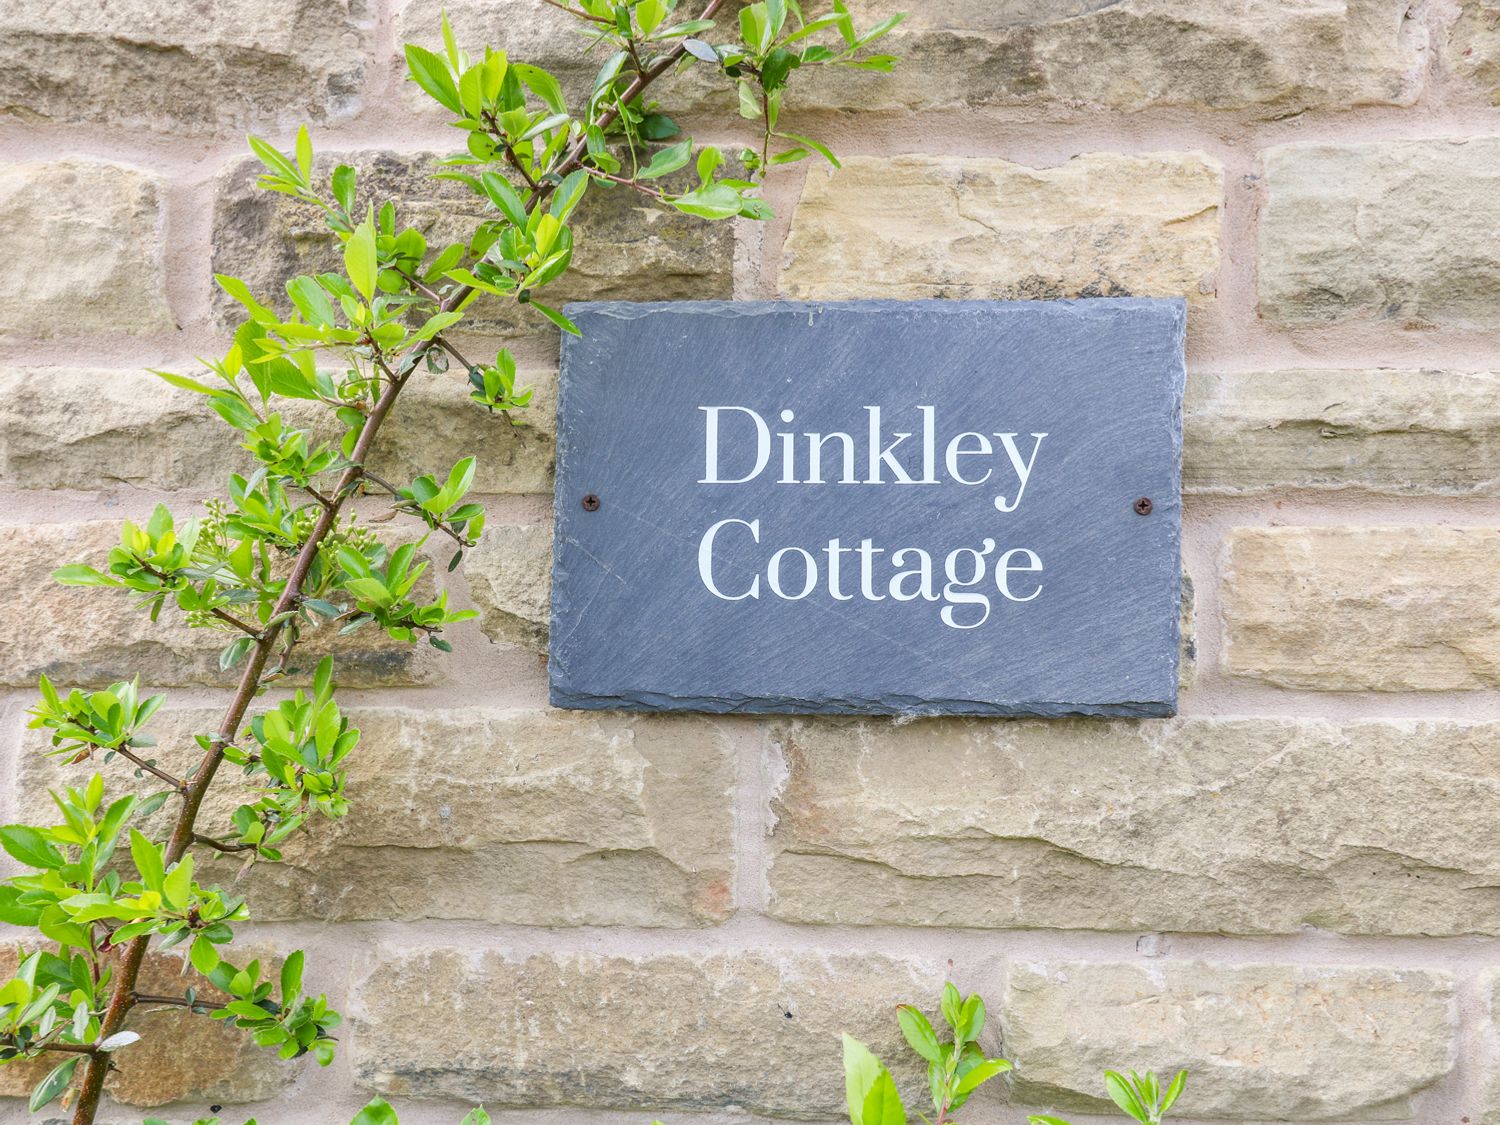 Dinkley Cottage, Lancashire